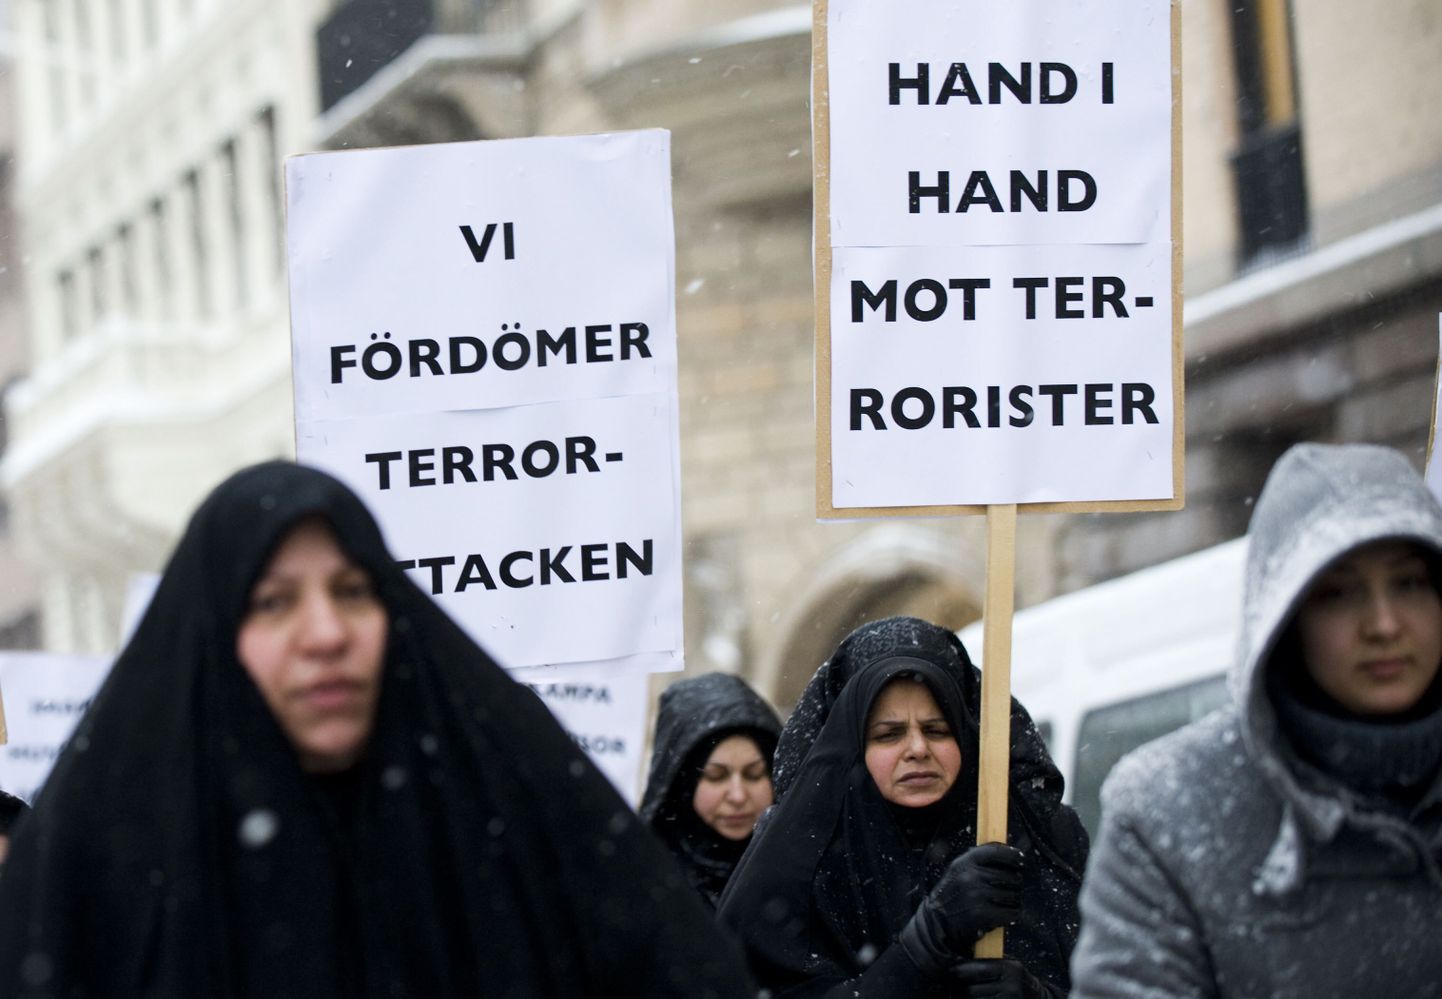 Rootsi moslemid 2010. aasta detsembris peetud terrorismivastasel meeleavaldusel.